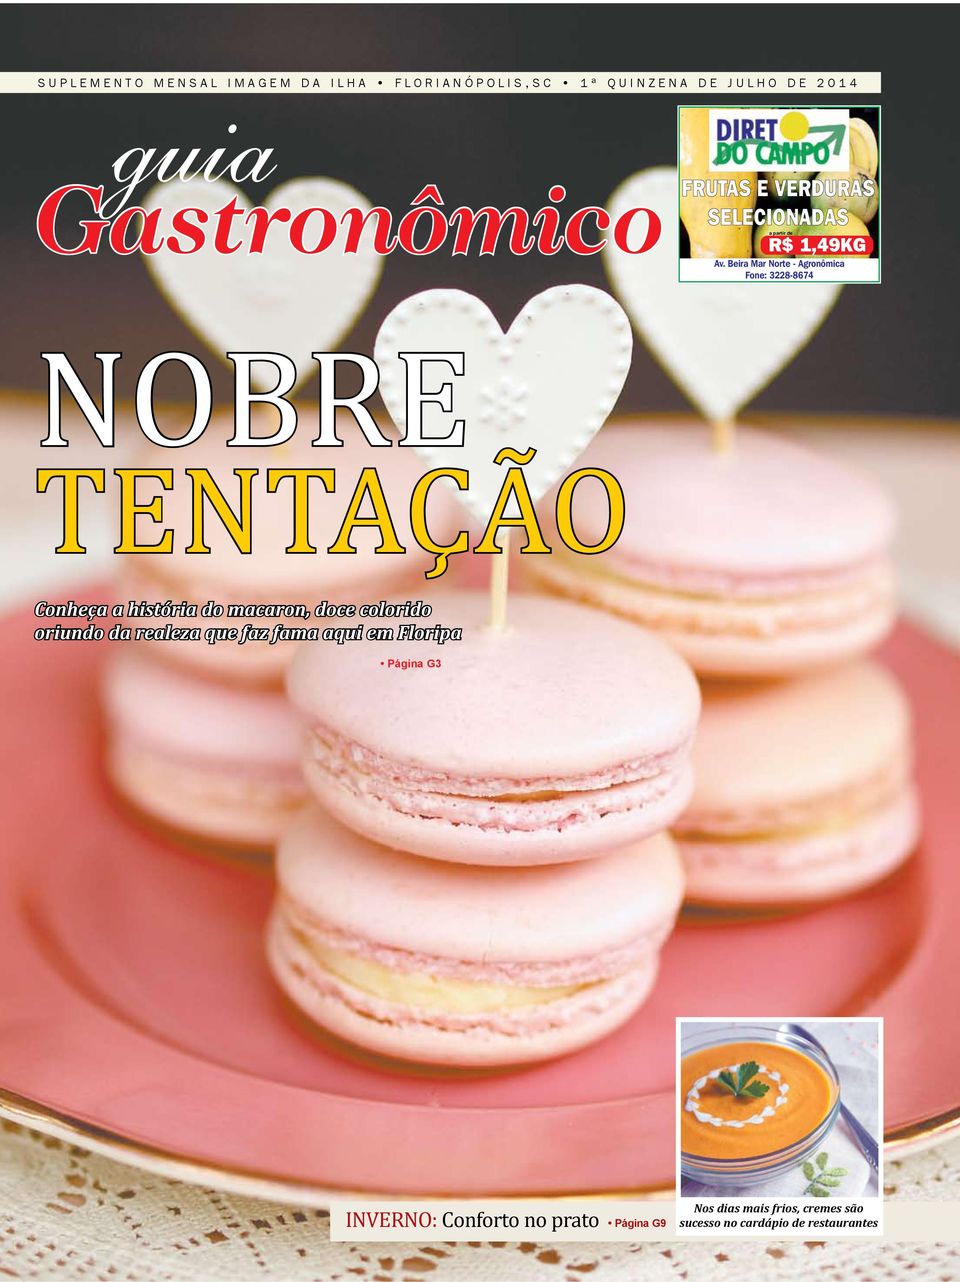 do macaron, doce colorido oriundo da realeza que faz fama aqui em Floripa Página G3 INVerNo: